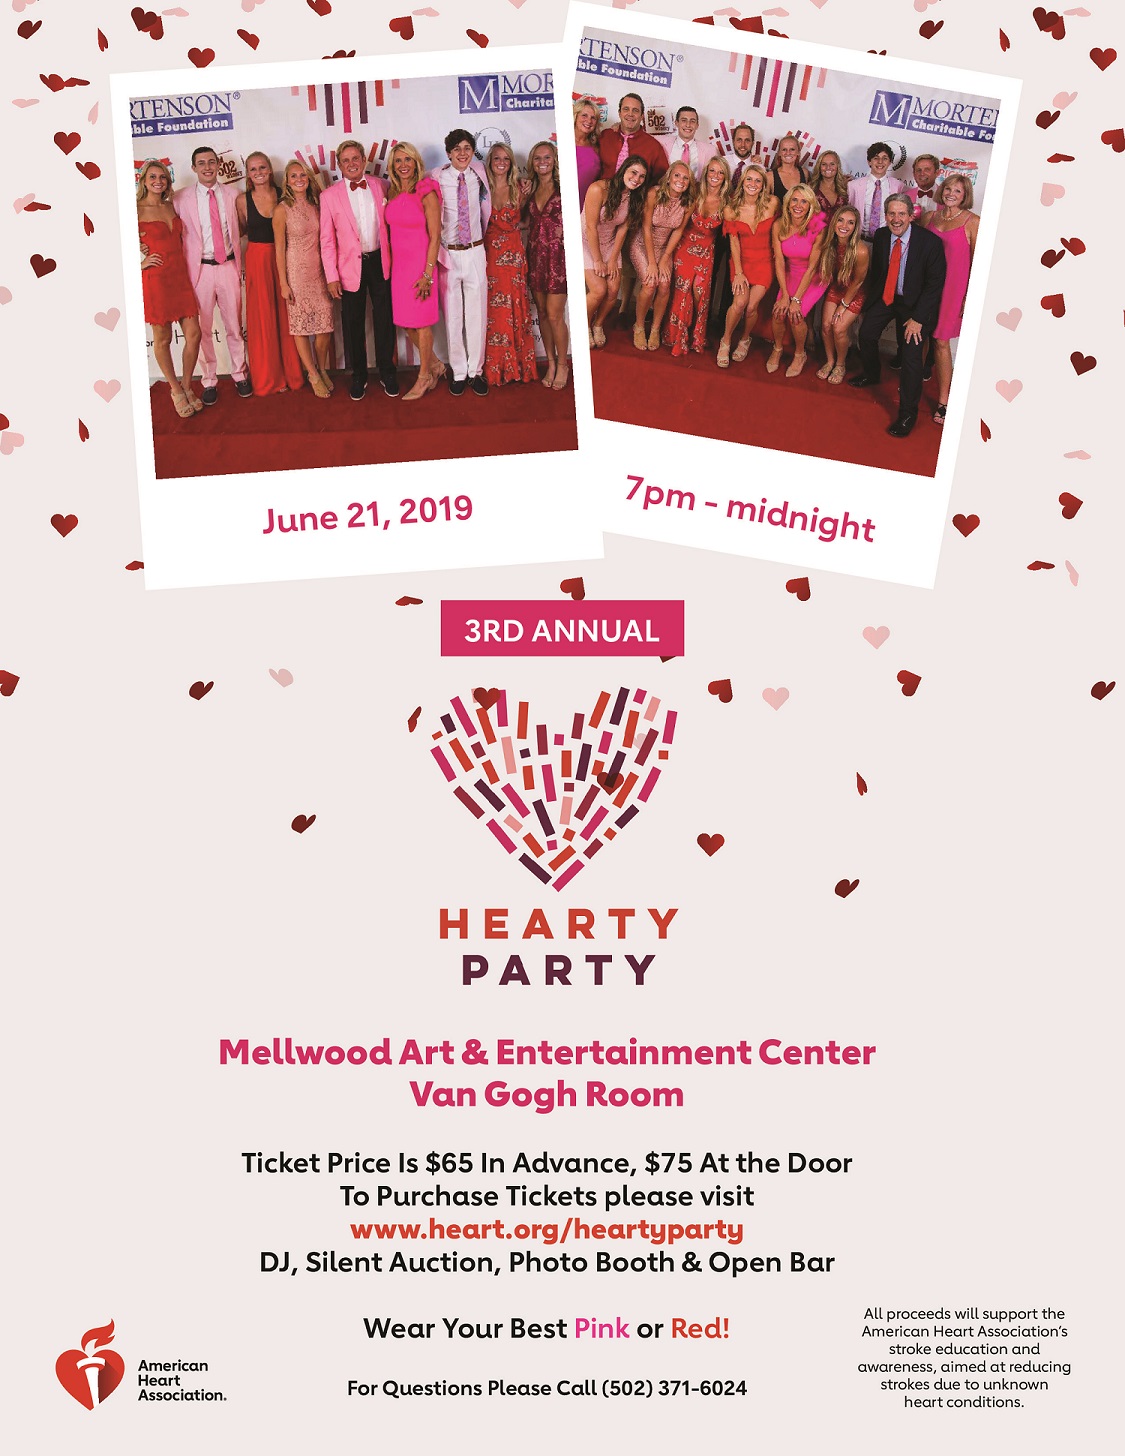 Hearty Party Invitation 06.21.2019